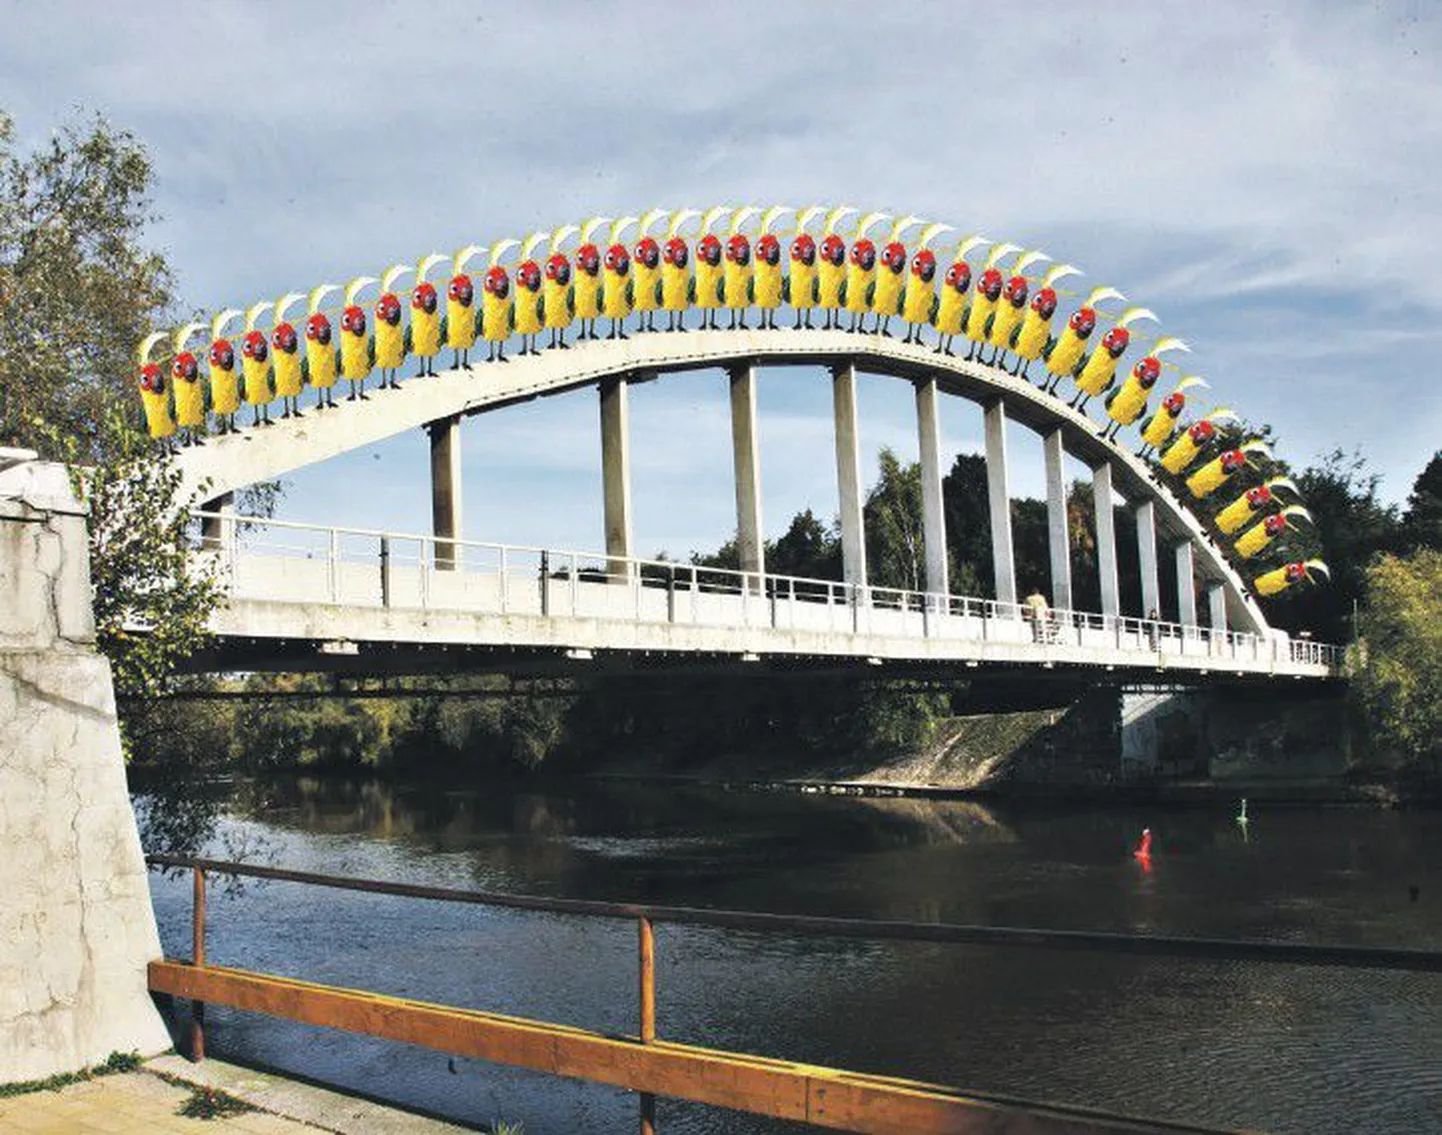 38 попугаев измеряют самый известный в Тарту мост.